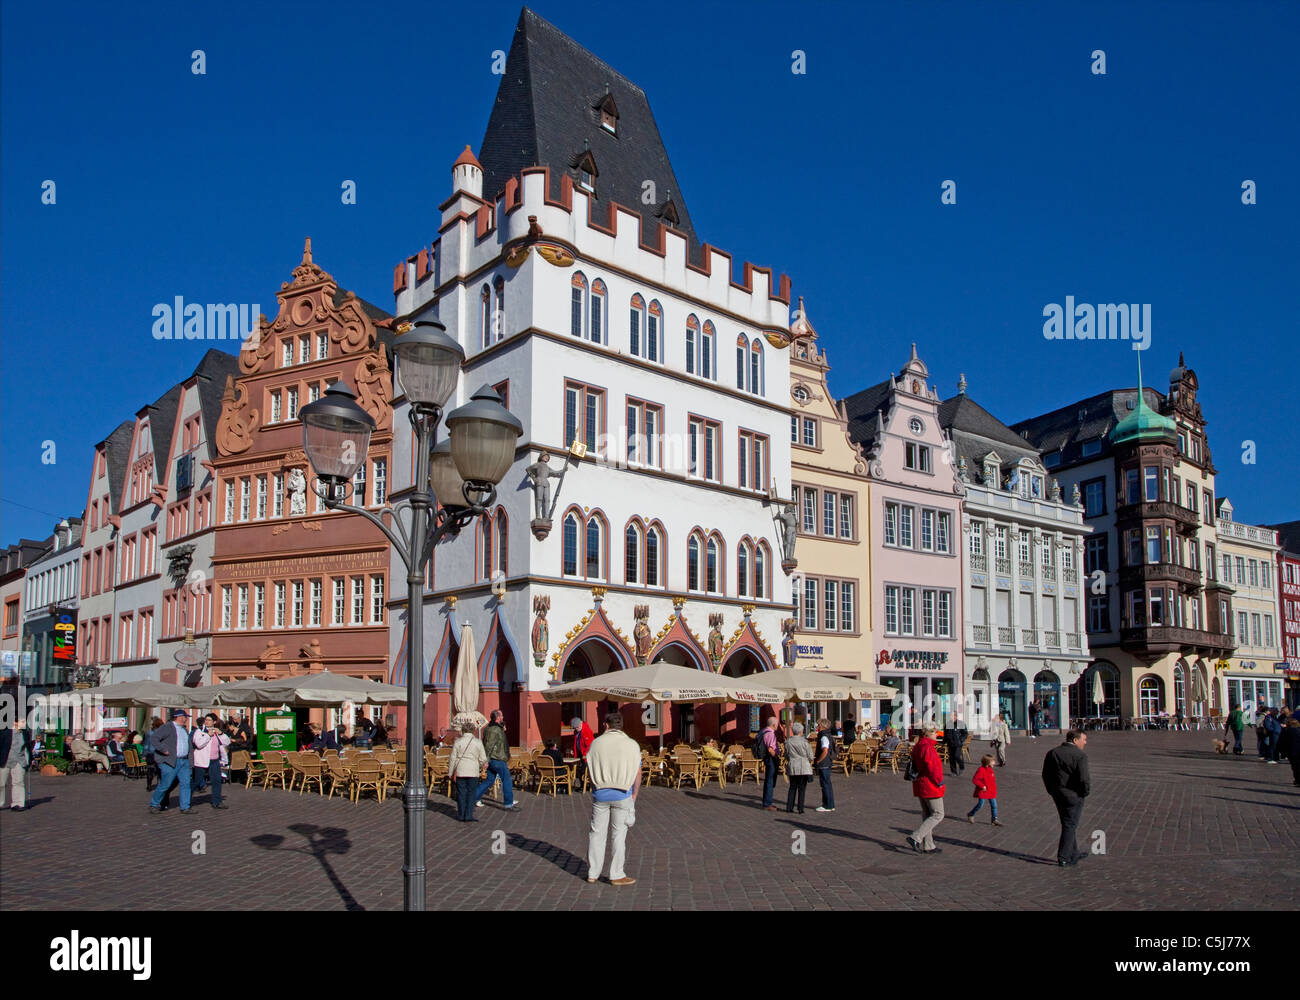 Hauptmarkt von Trier, Ratskeller, links das rote Haus,Trier, Main market place, Trier Stock Photo